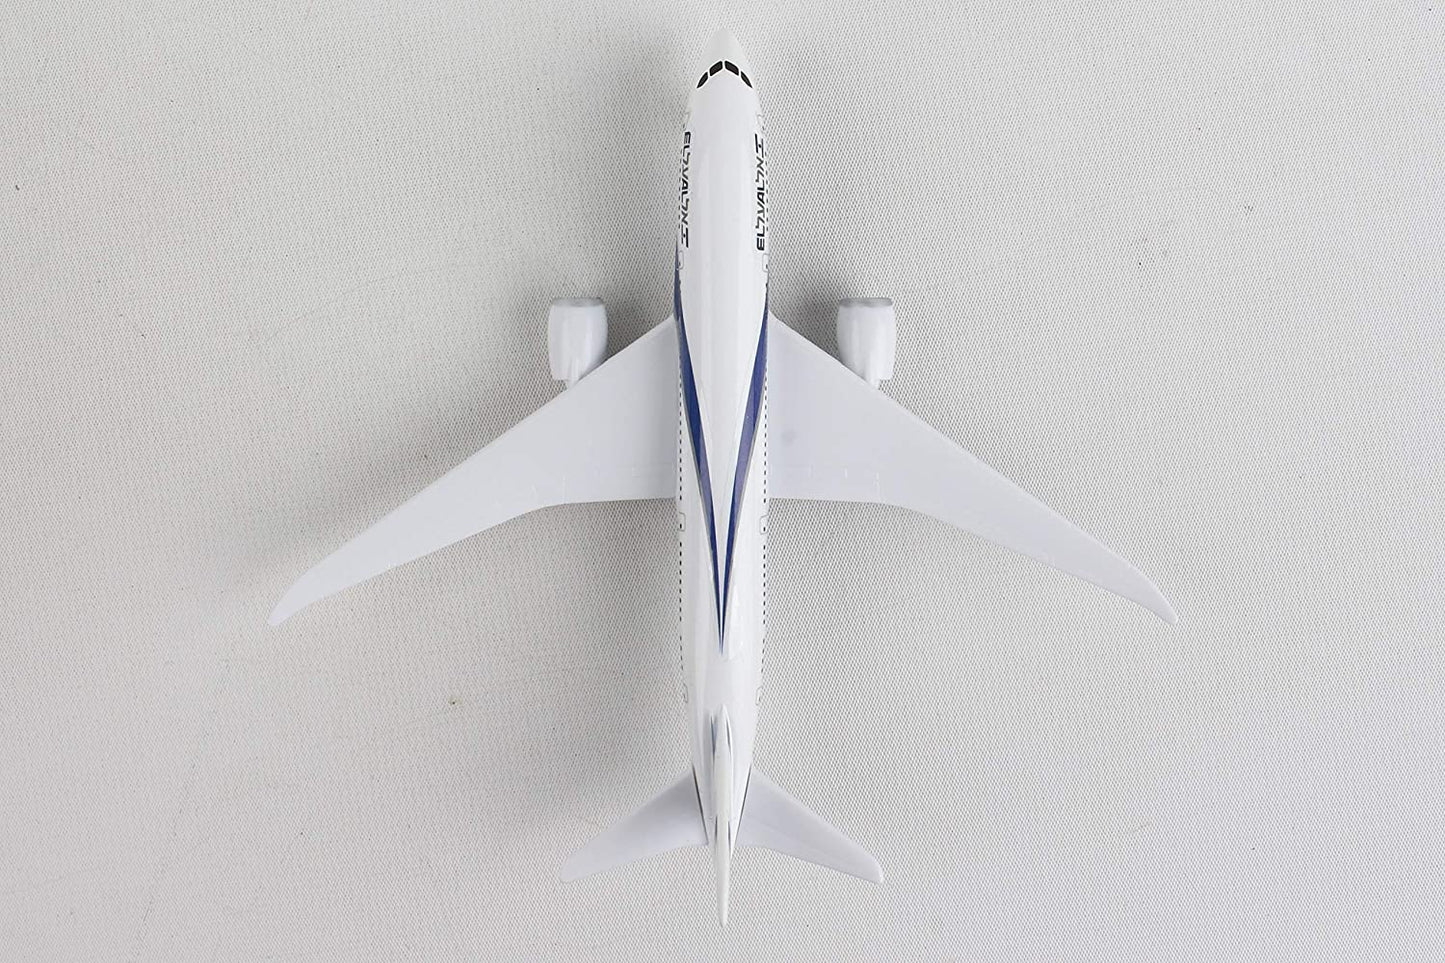 DARON EL AL Israel Airlines Die-cast Airplane Model